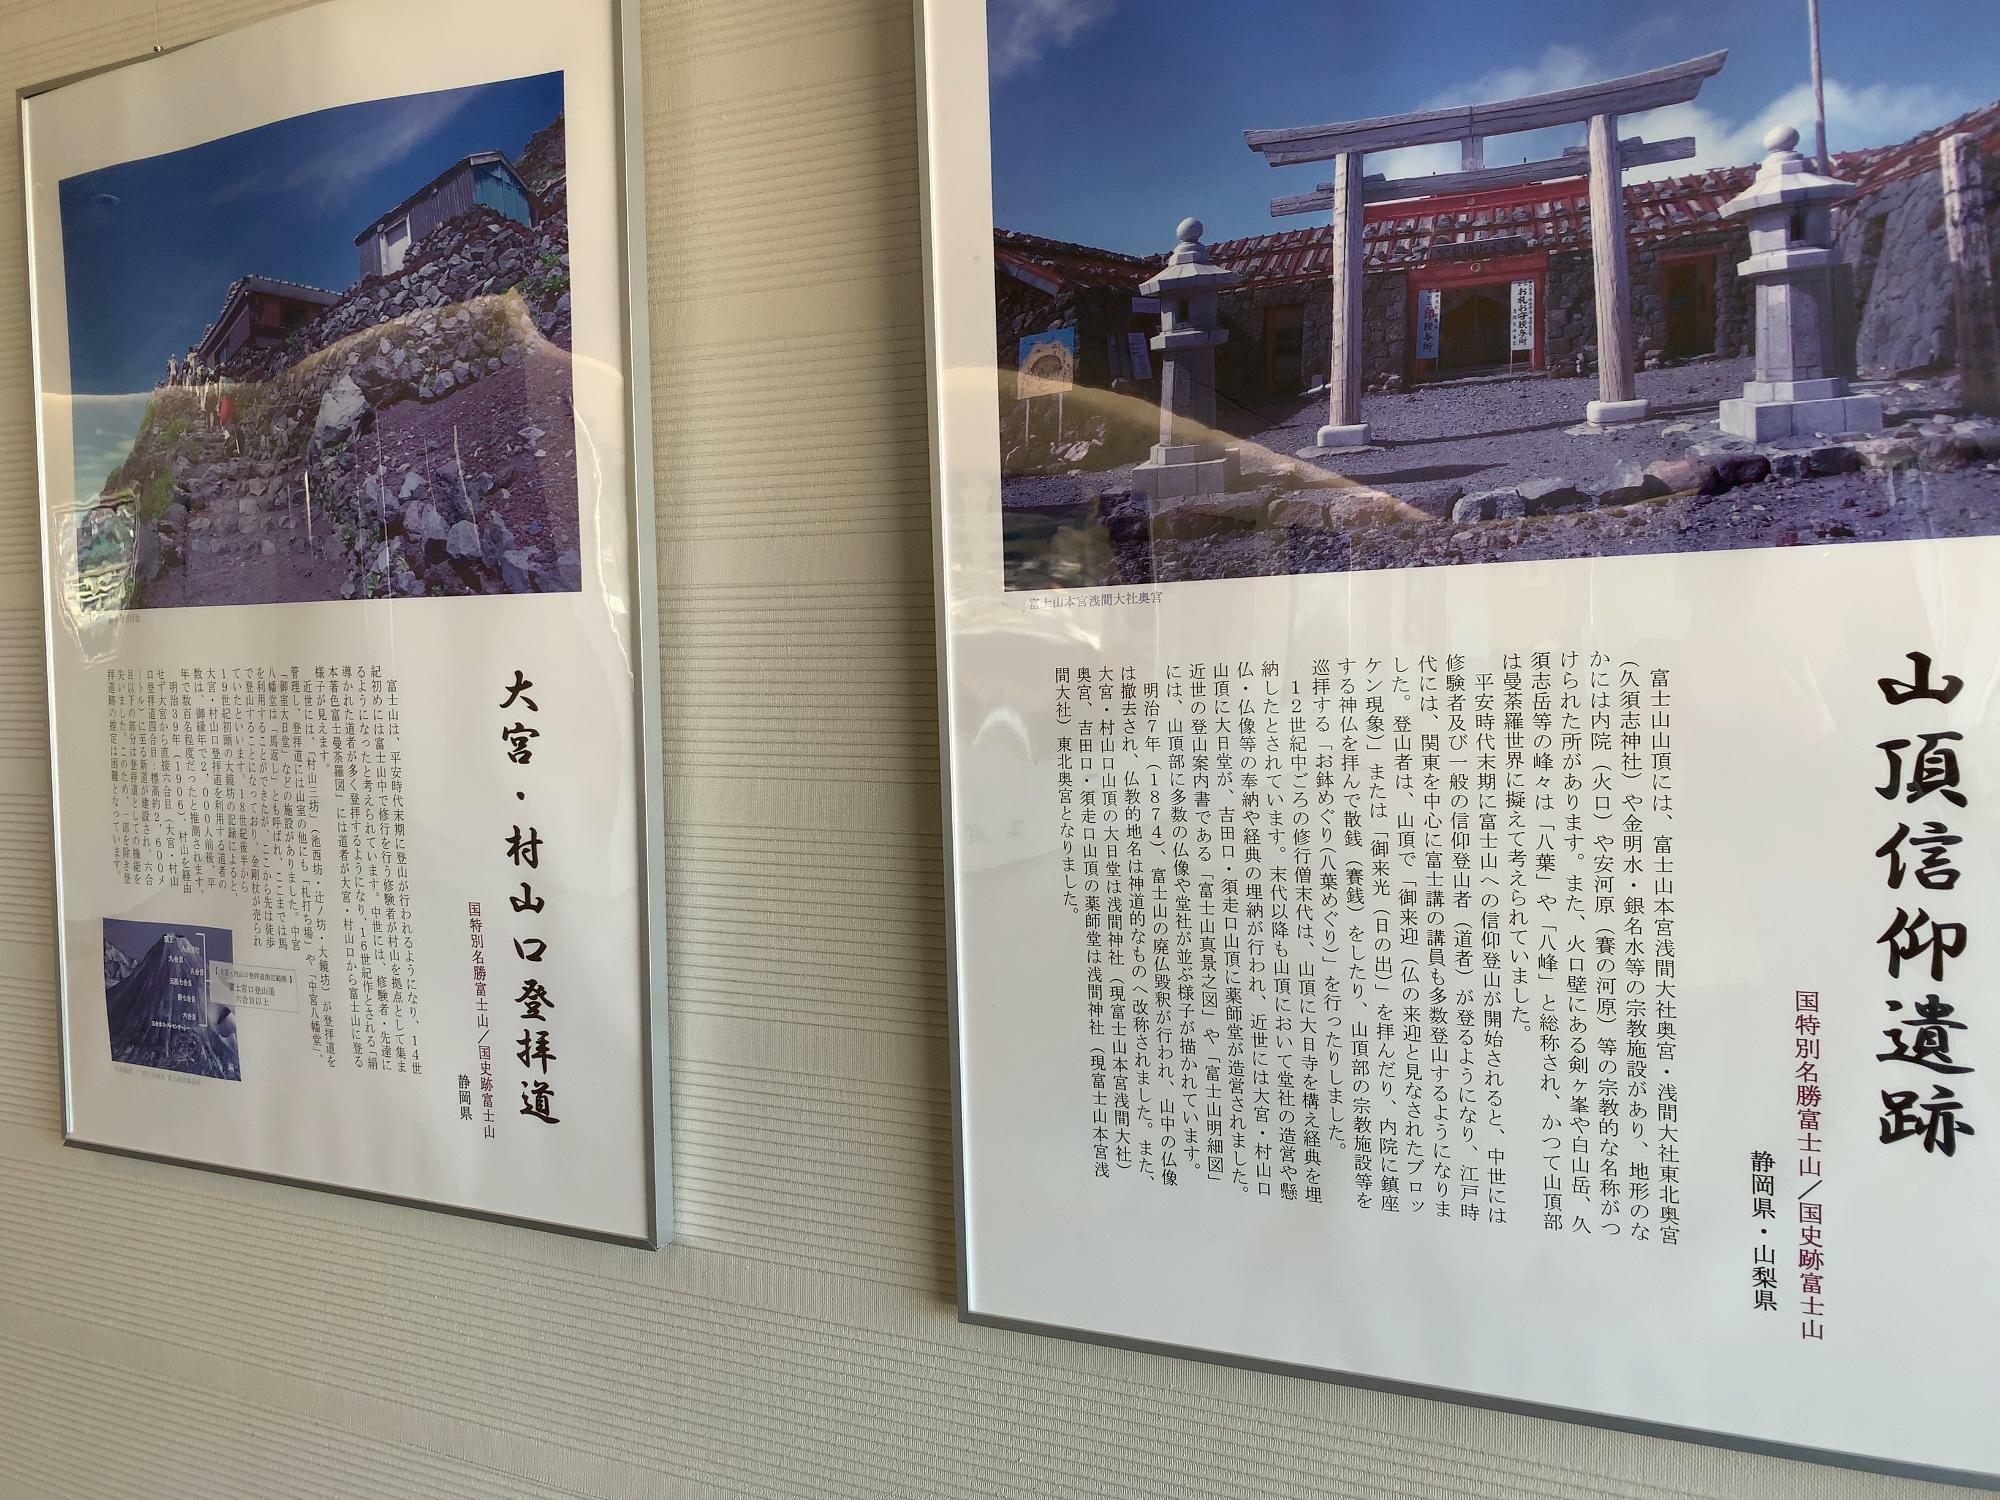 富士山構成資産のパネルの展示もあります